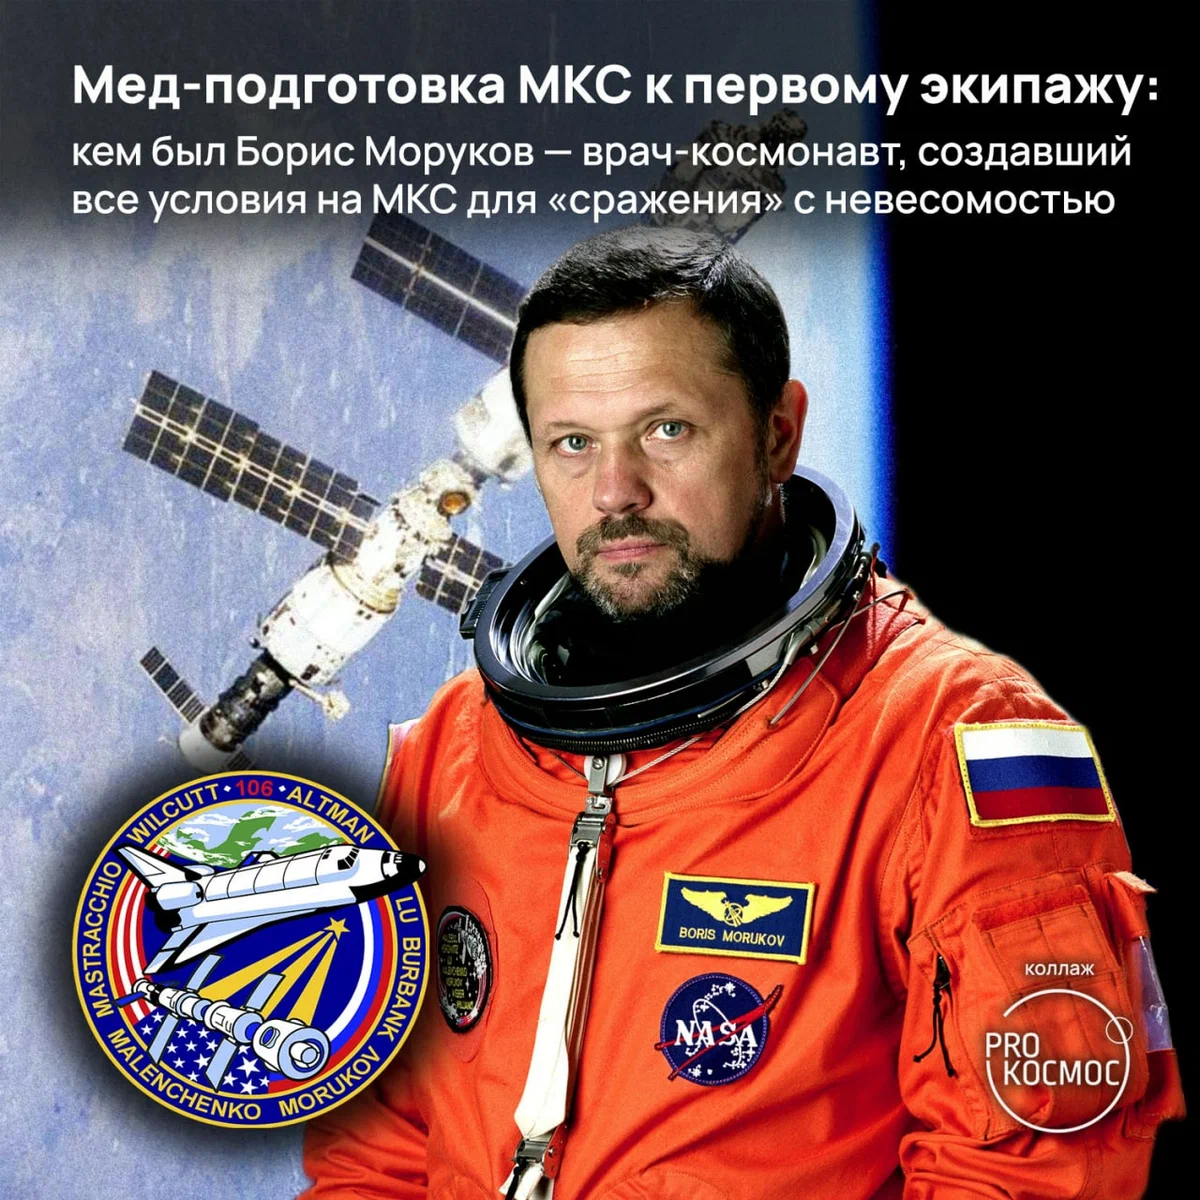 Мед-подготовка МКС к первому экипажу: кем был Борис Моруков — врач-космонавт, создавший все условия на МКС для «сражения» с невесомостью height=1200px width=1200px